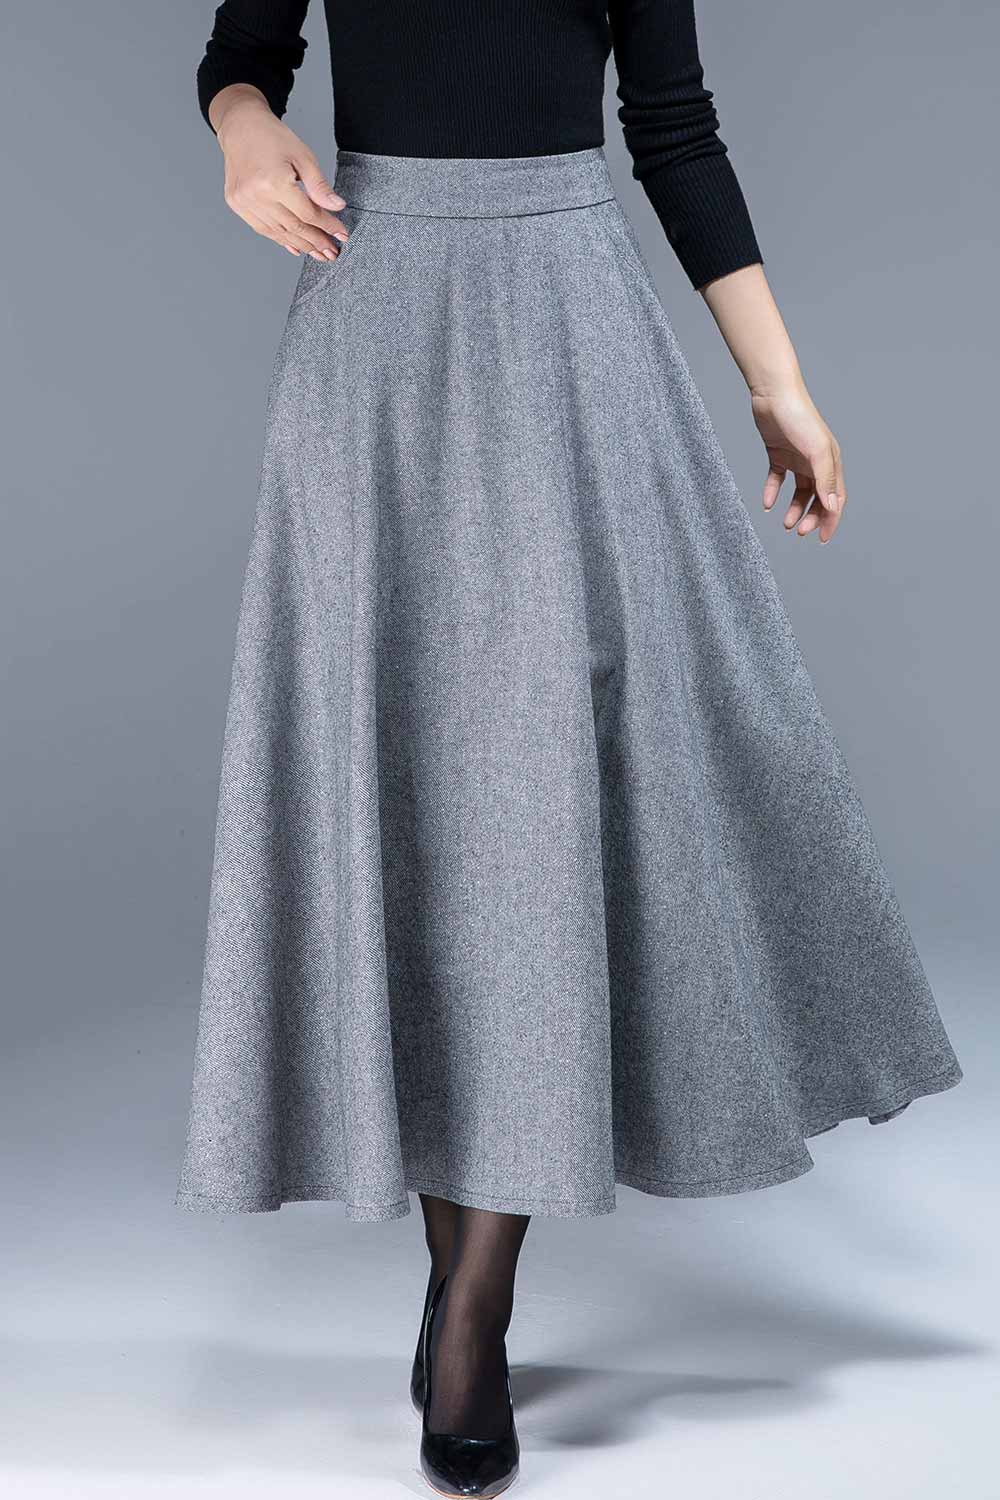 gray wool skirt, a line skirt, classic skirt, elegant skirt, skirt wit –  XiaoLizi